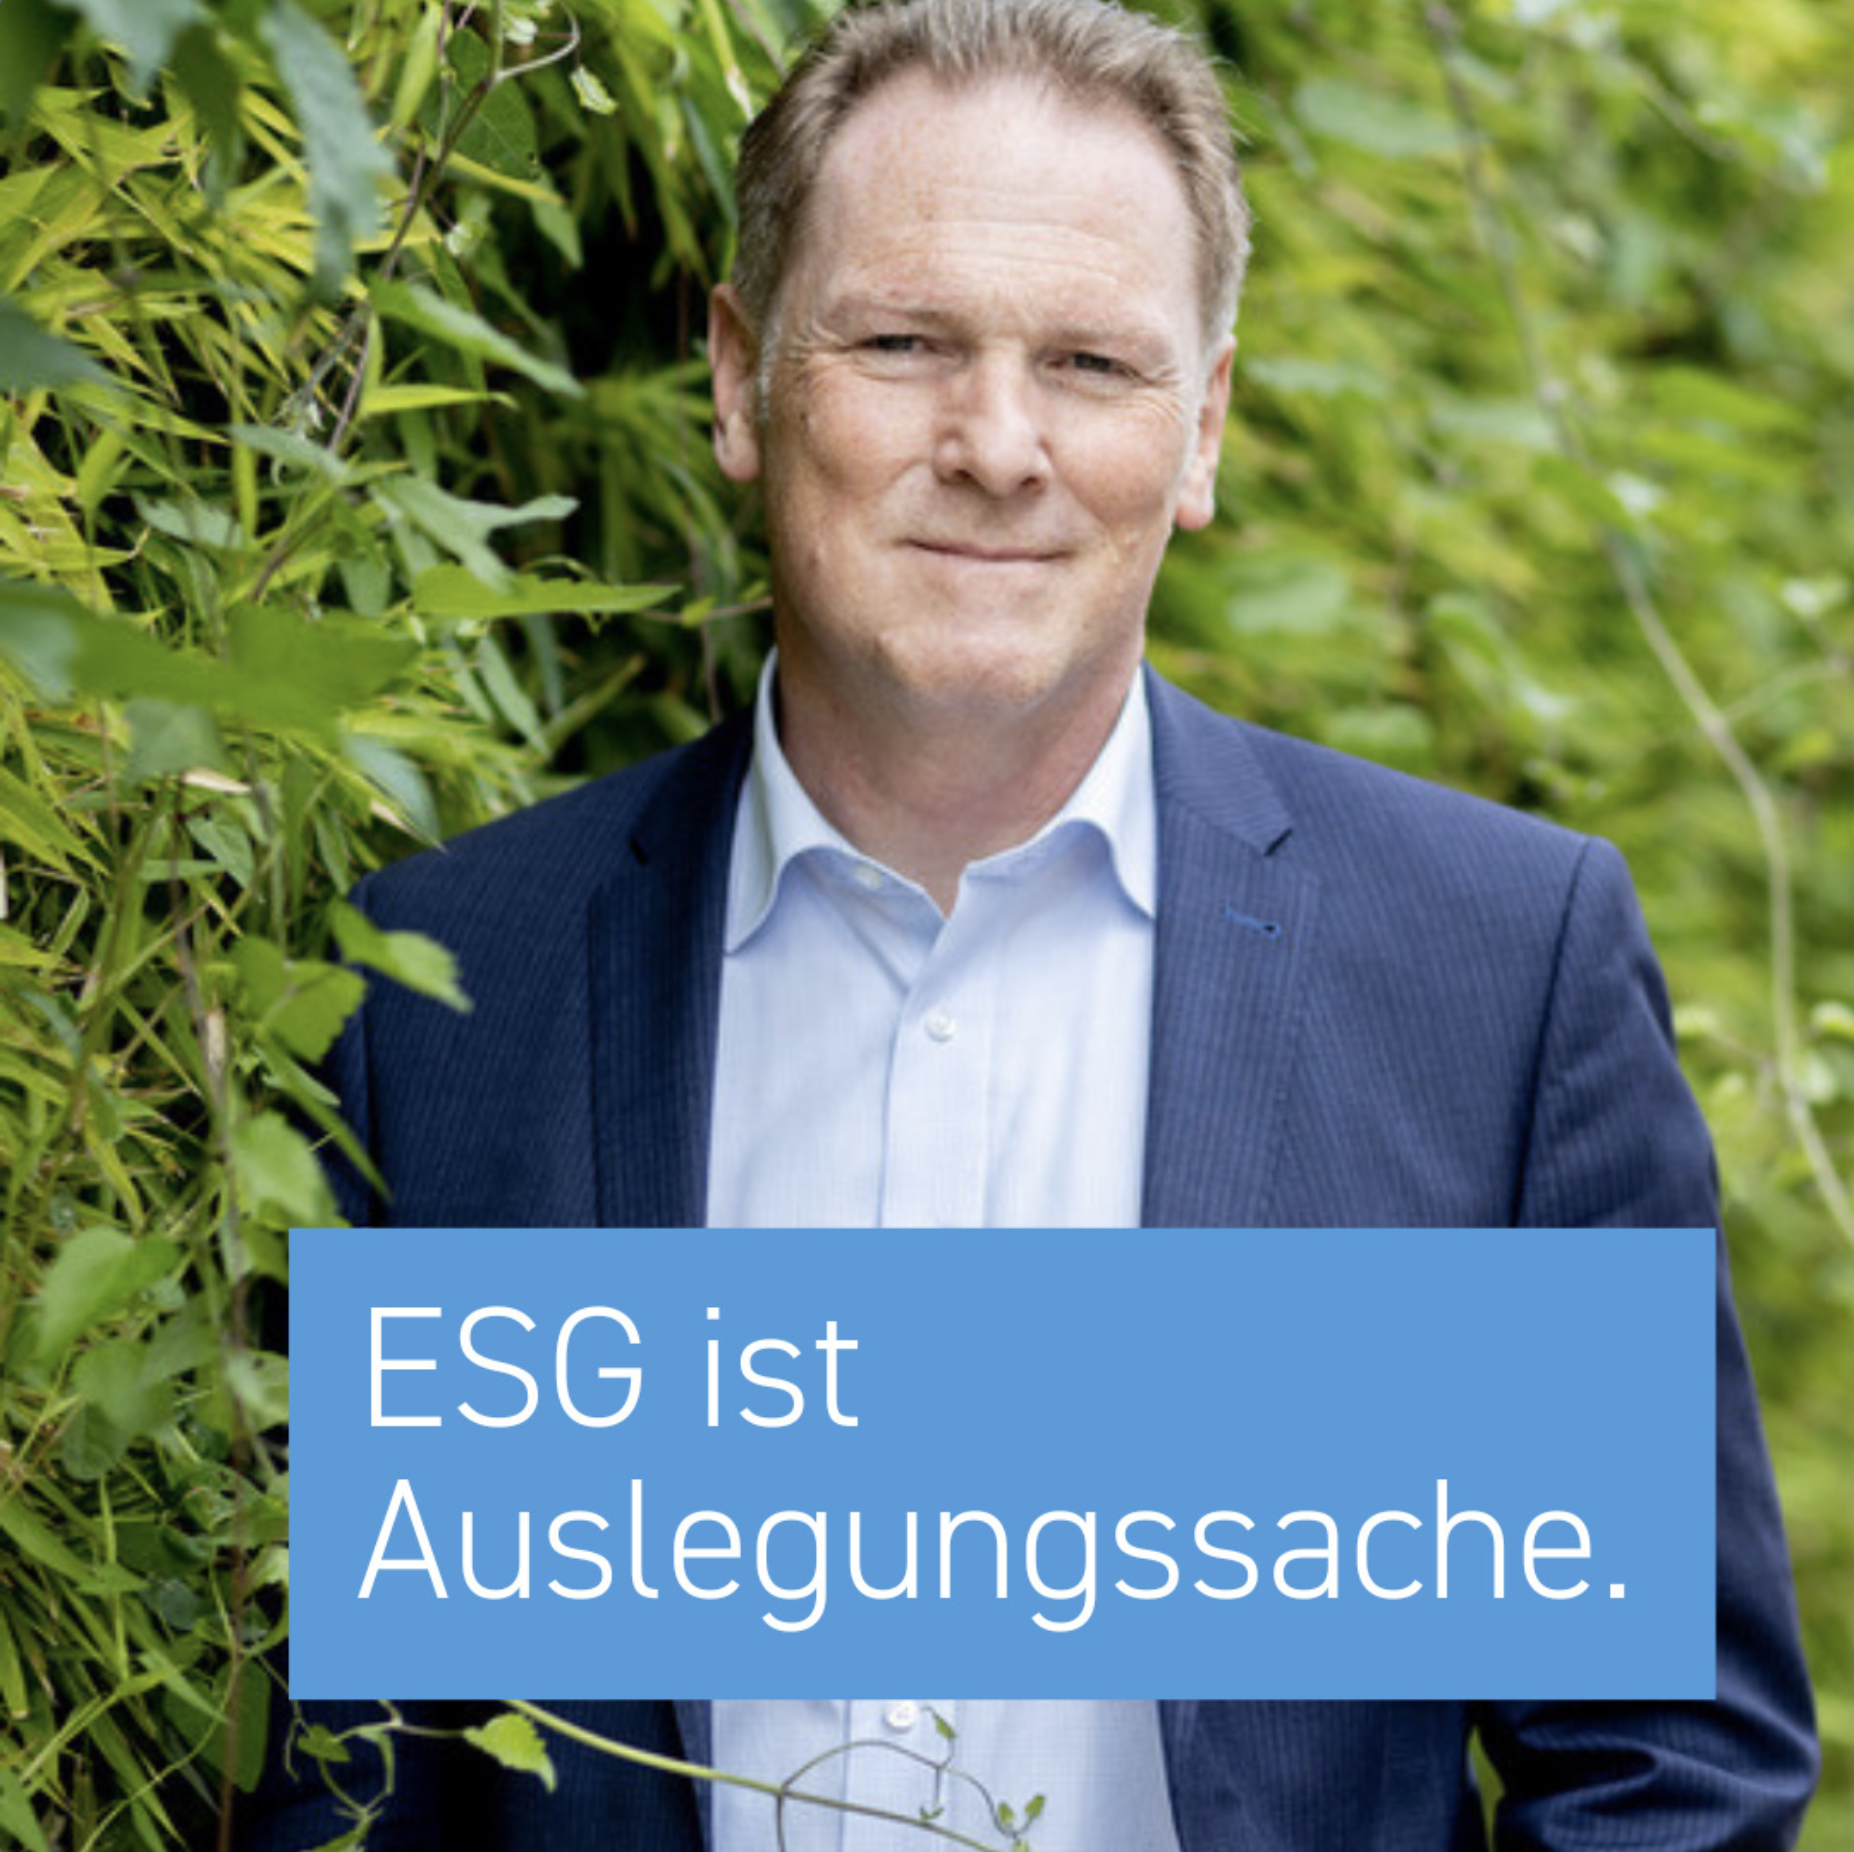 ESG ist Auslegungssache. Harry Odenthal im Interview mit einBlick